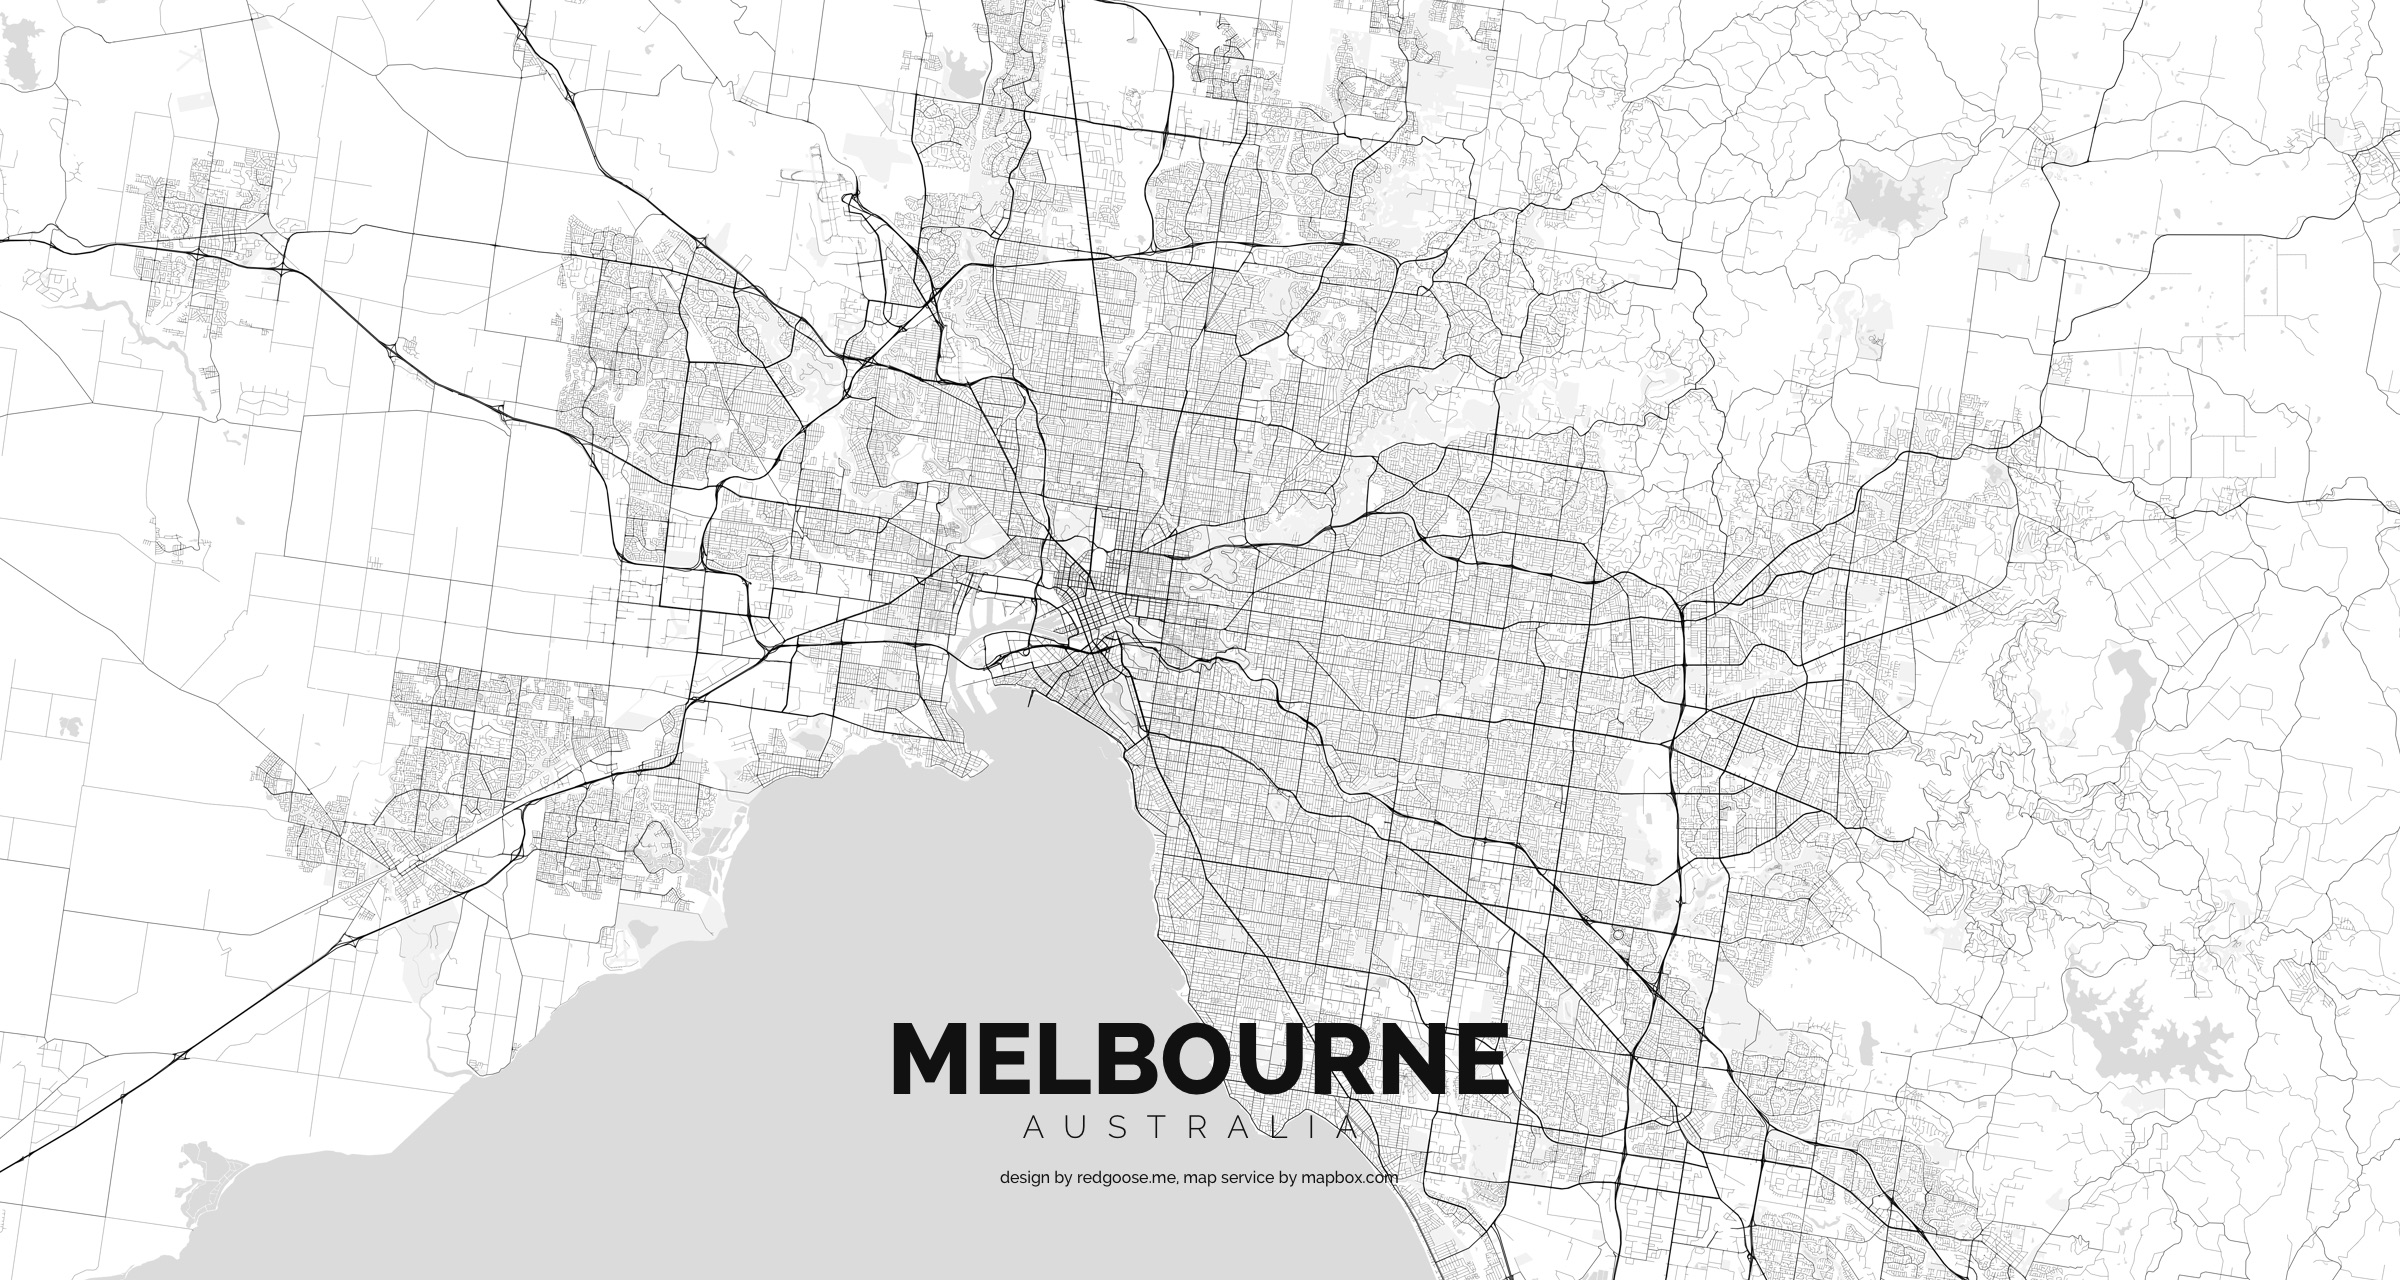 Australia_-_Melbourne.jpg